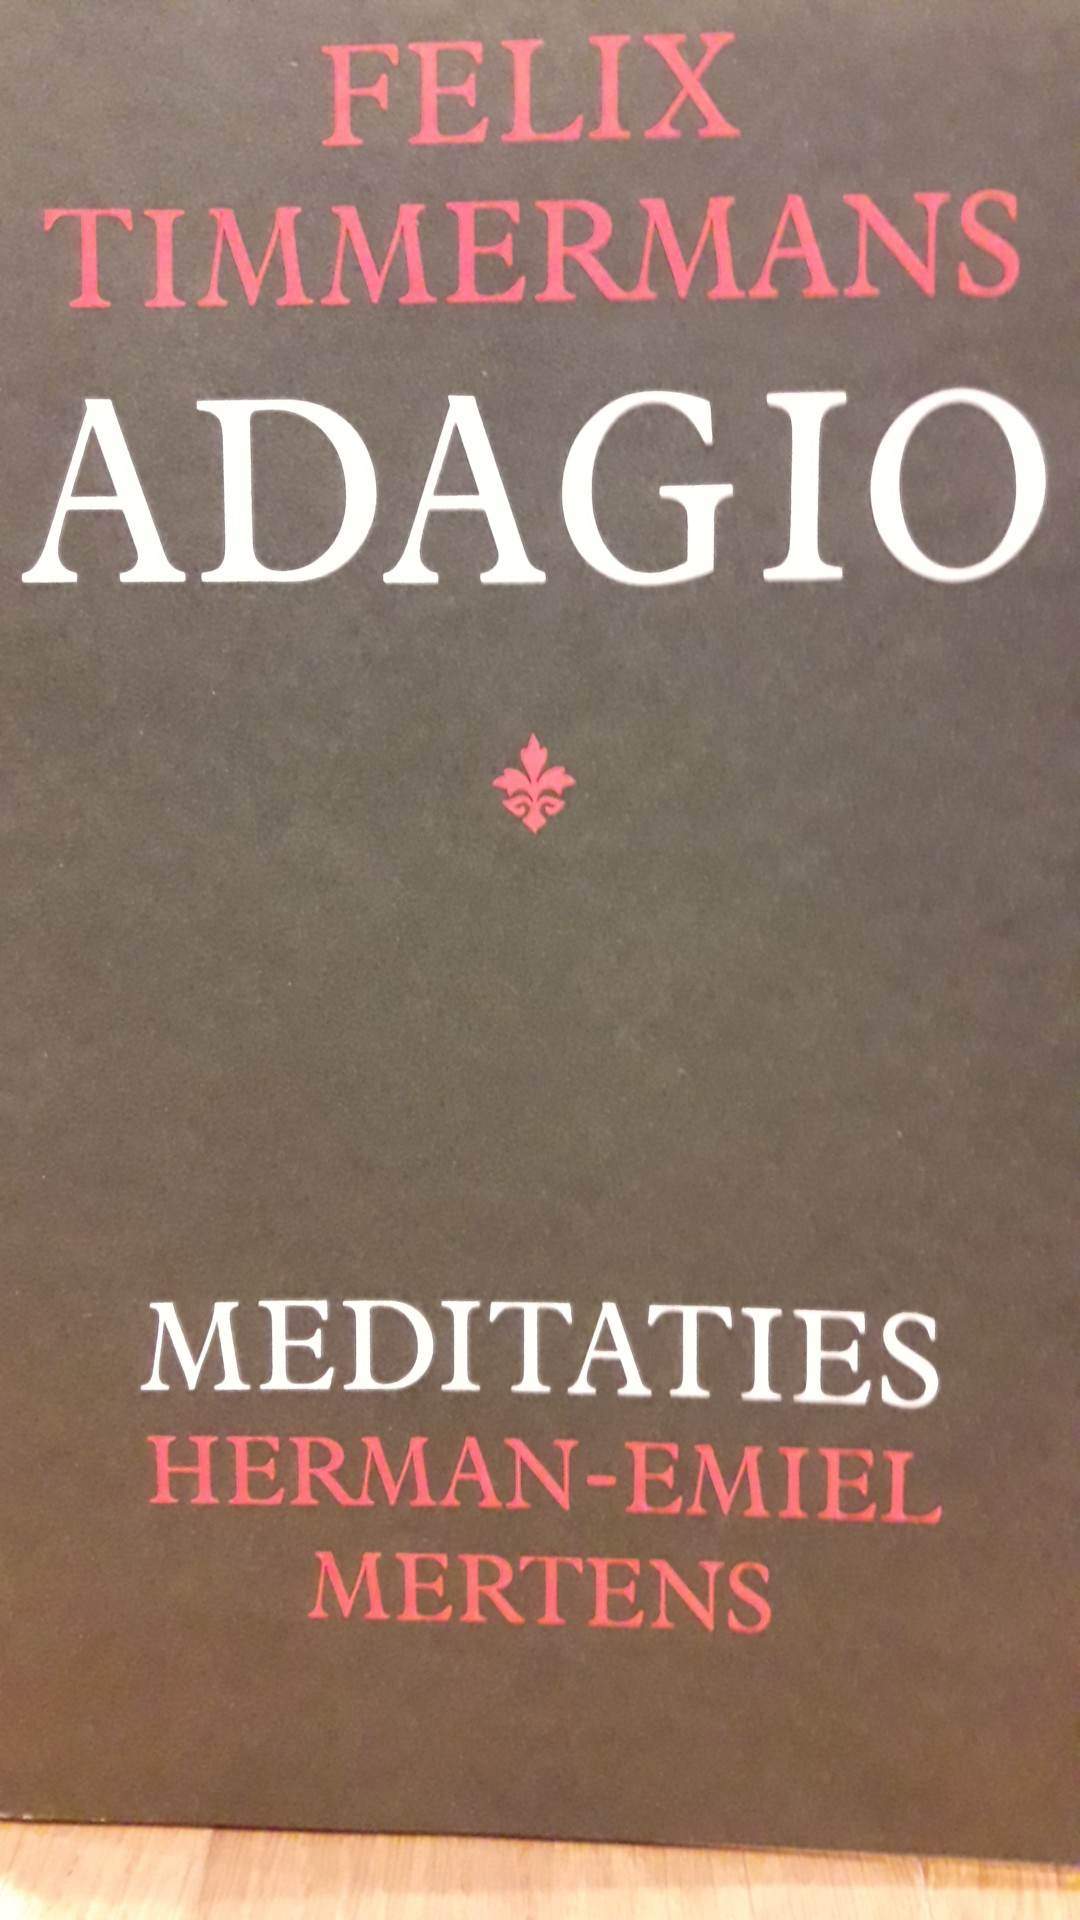 Felix Timmermans - Adagio - Meditaties Herman Emiel Mertens/ 94 blz